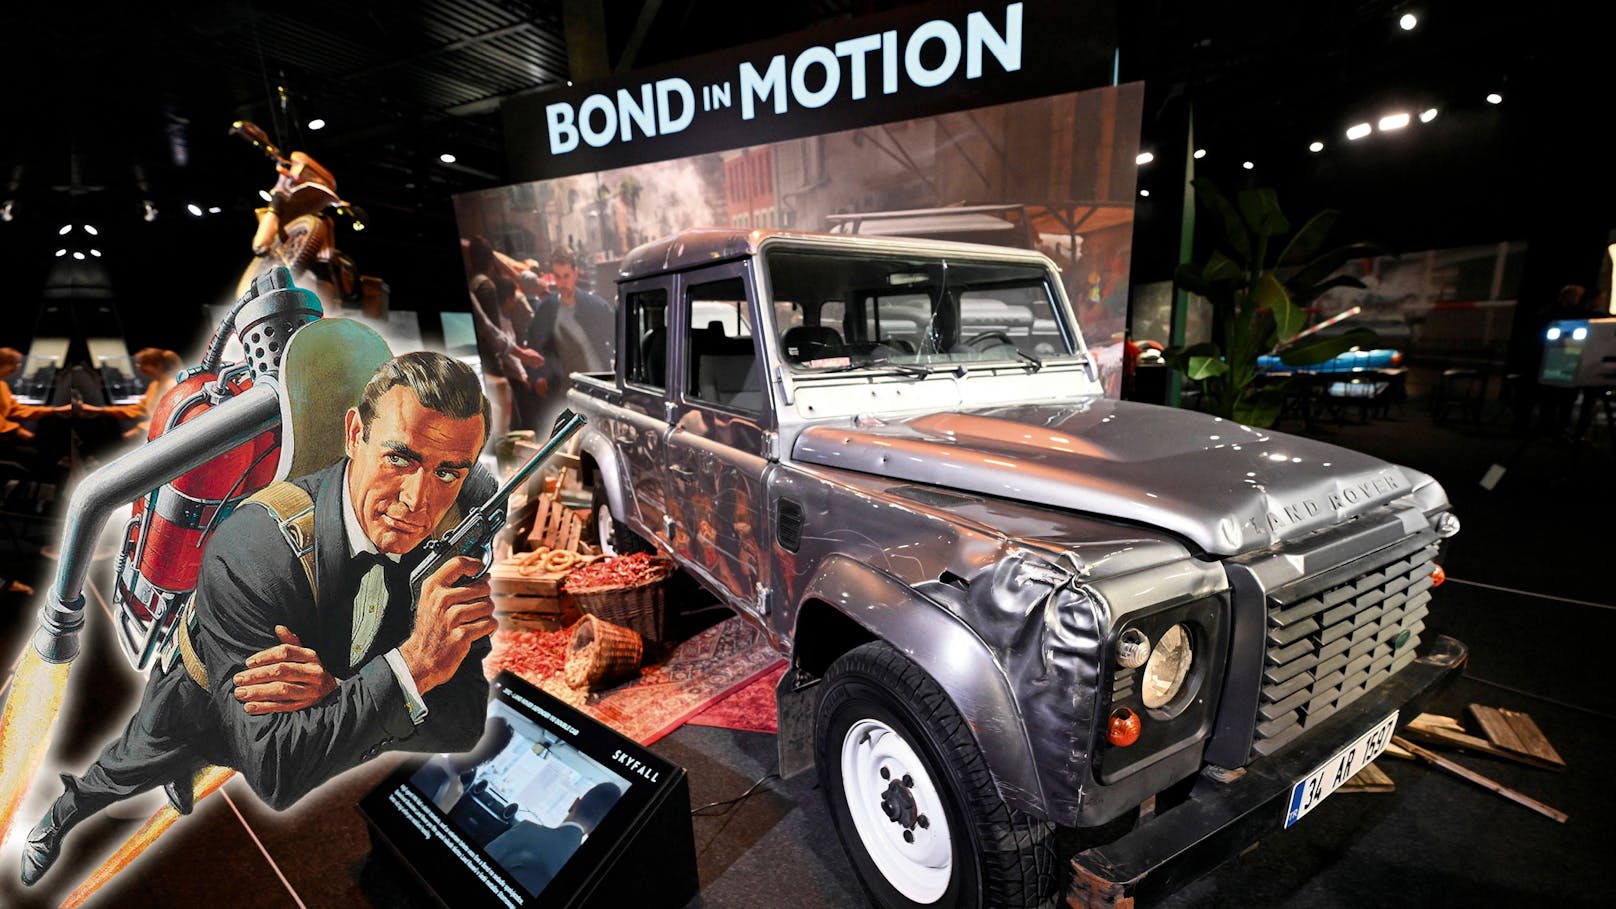 Bond, James Bond – Schau bringt "007 Action" nach Wien